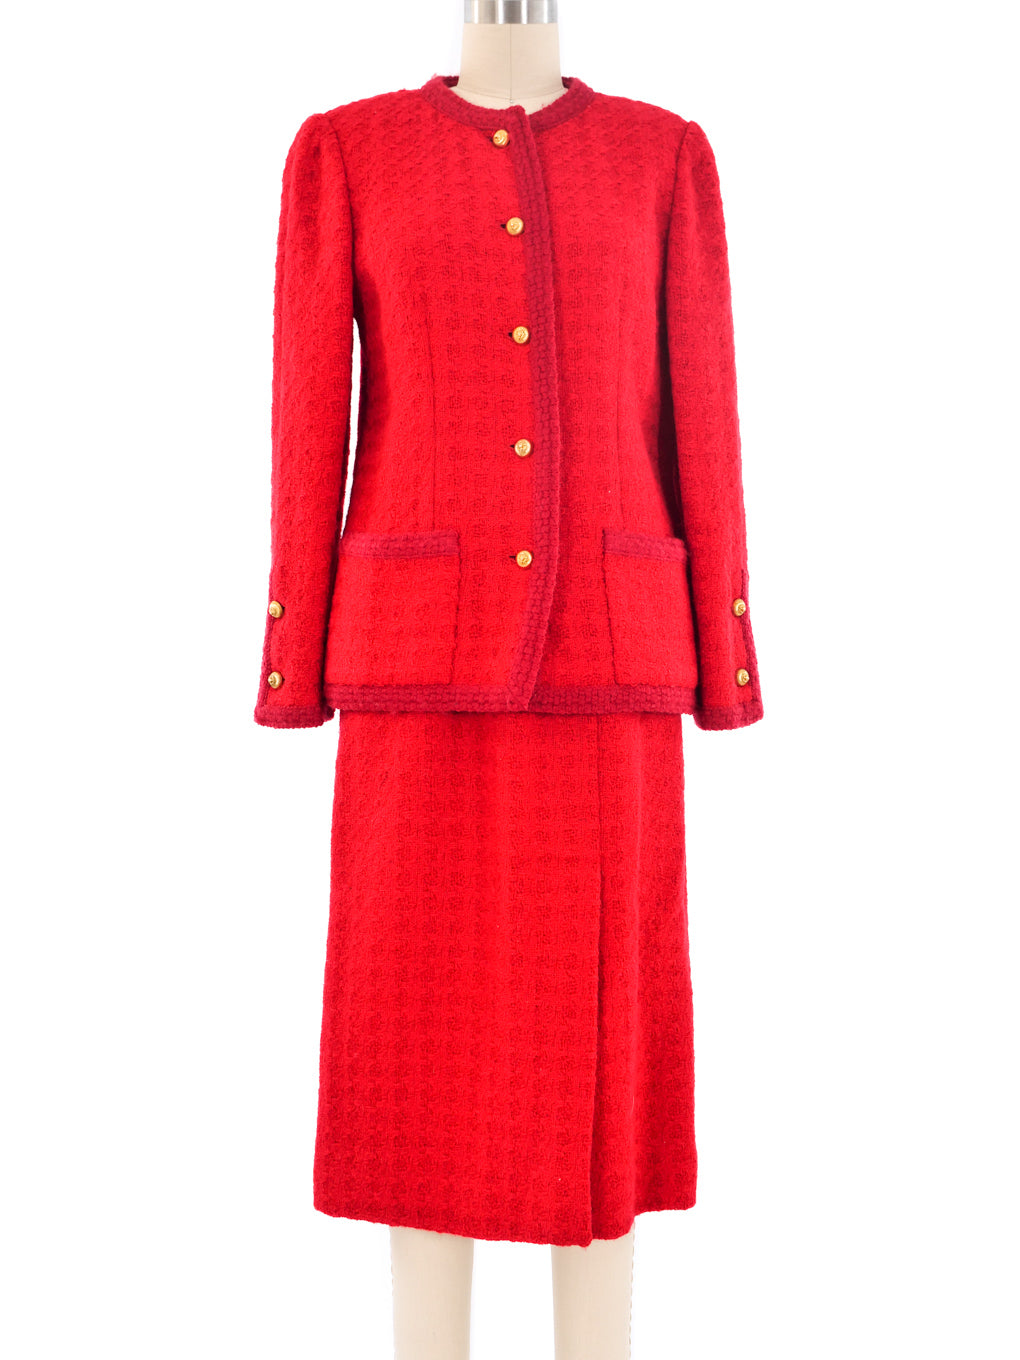 Red Tweed Skirt Suit